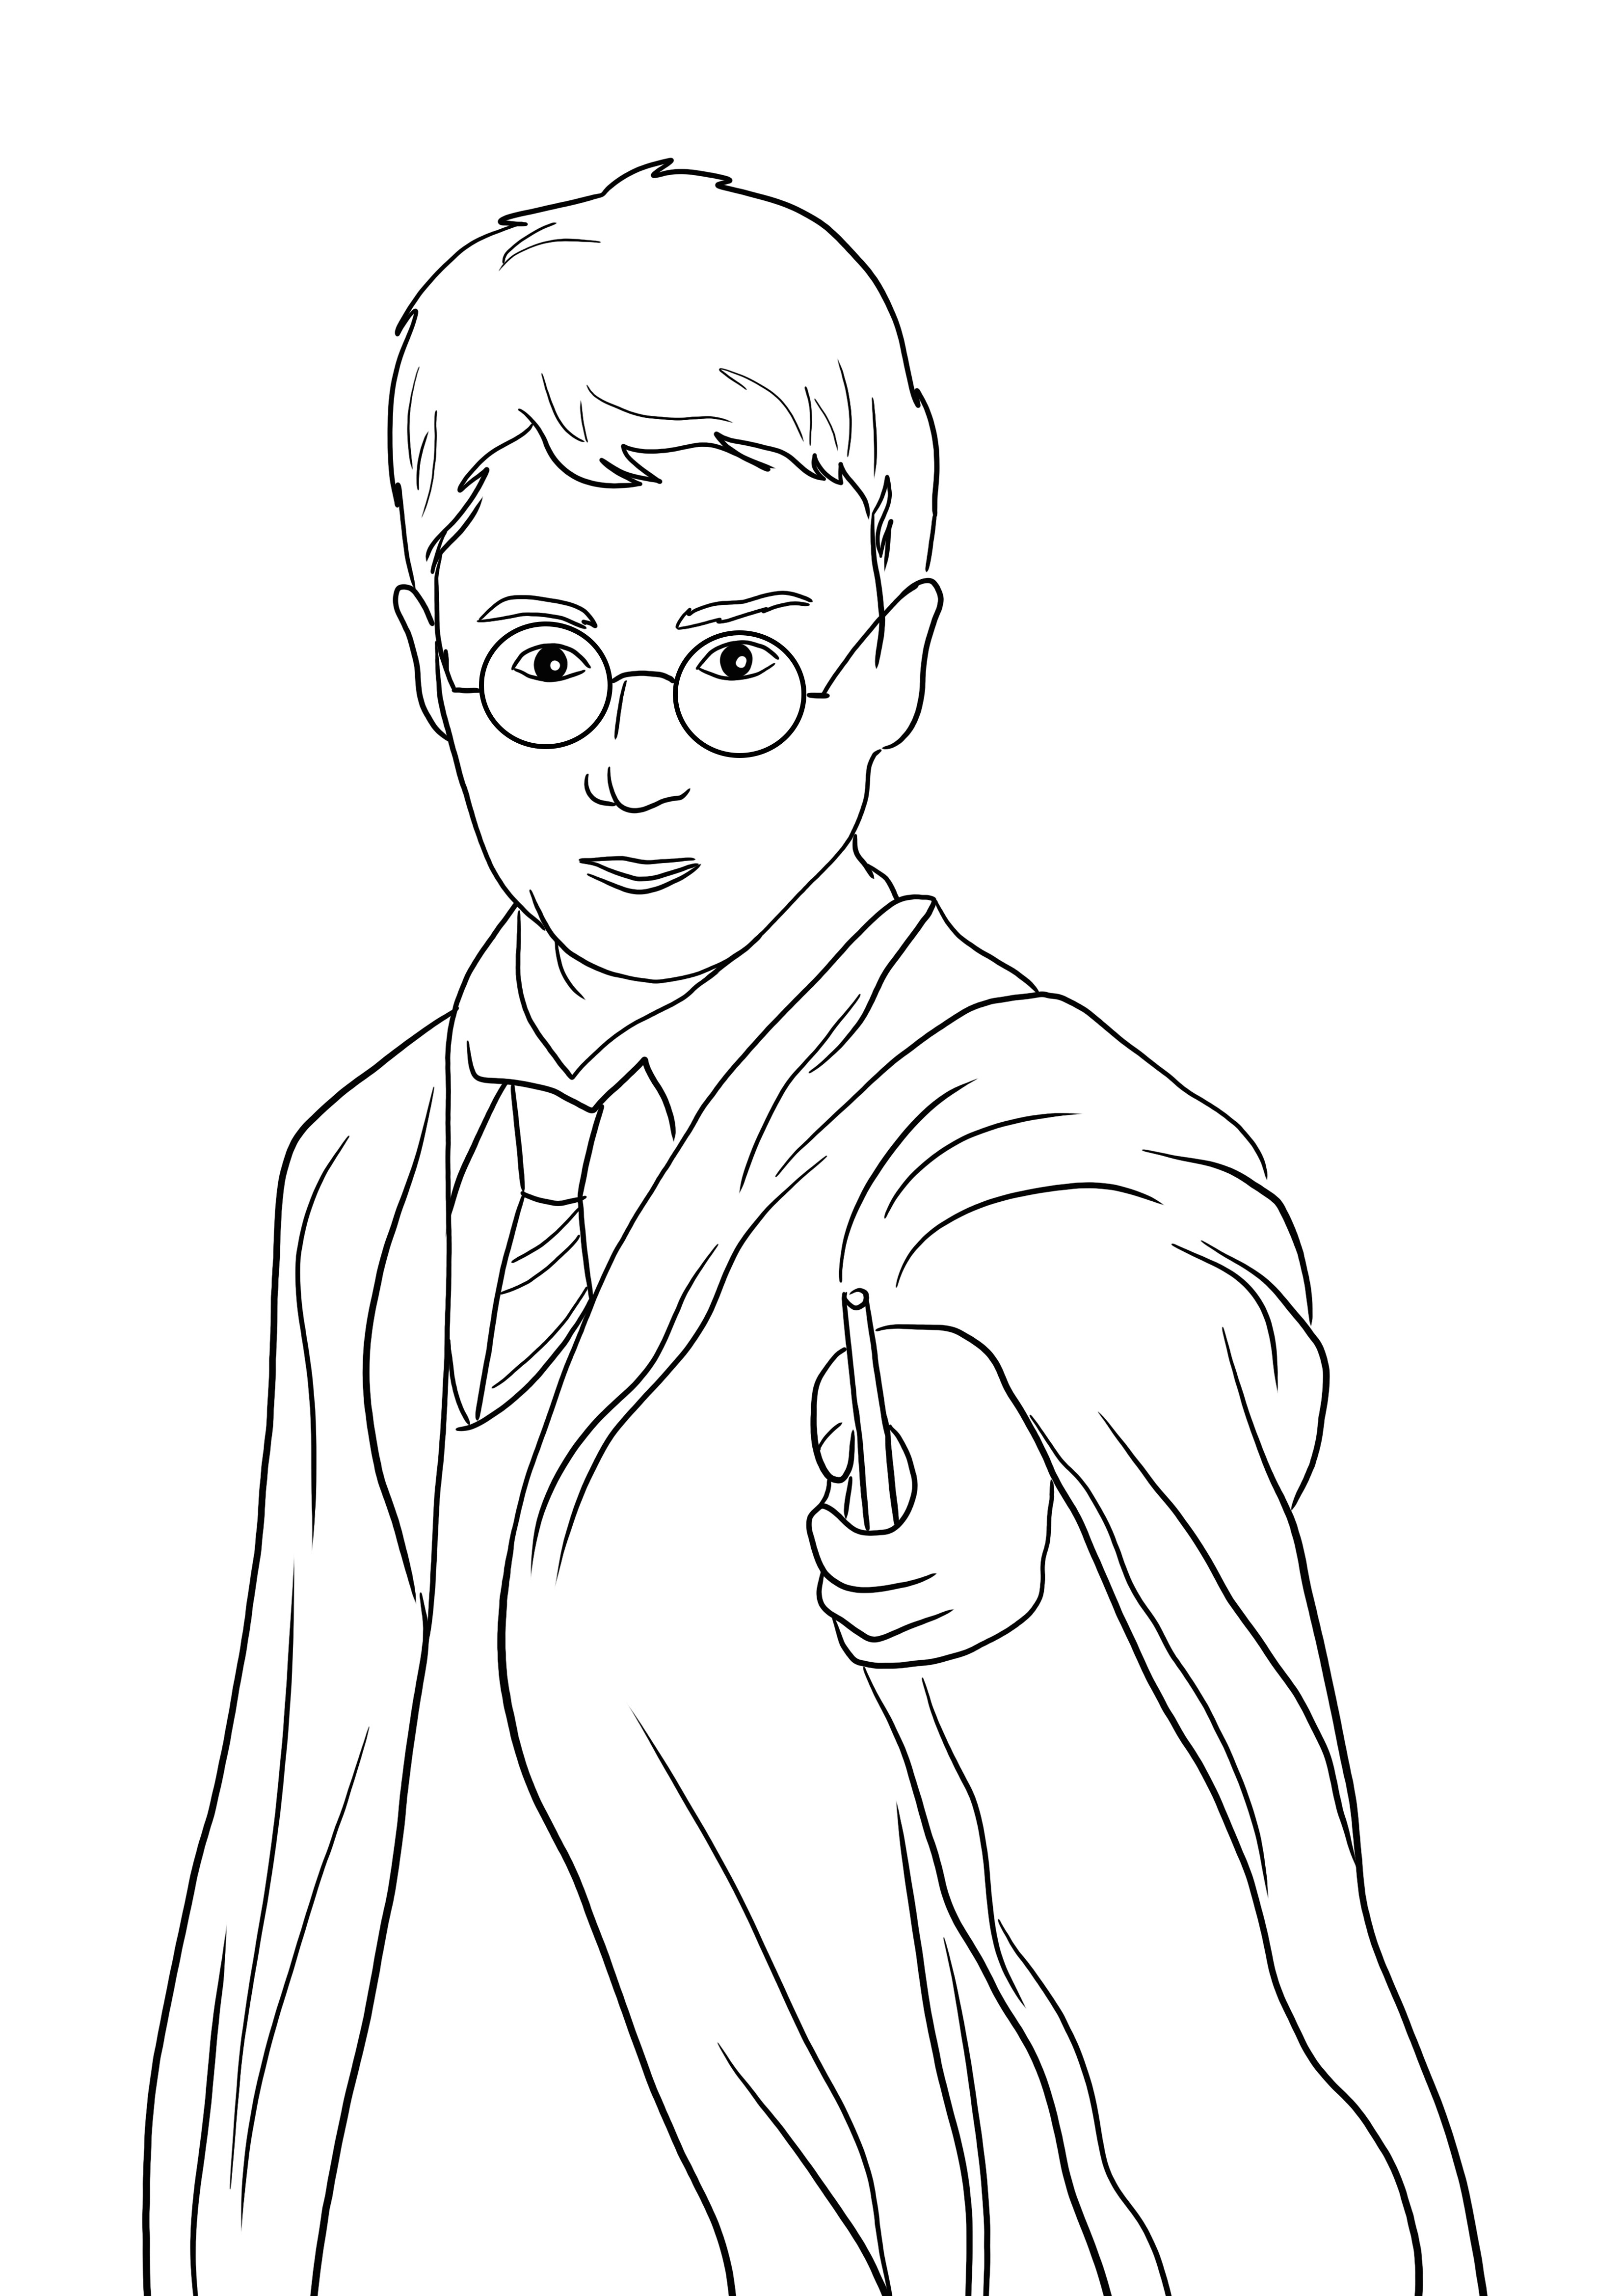 Harry Potter ilmainen väritys ja tulostettavissa ladata tai tallentaa myöhempää käyttöä varten